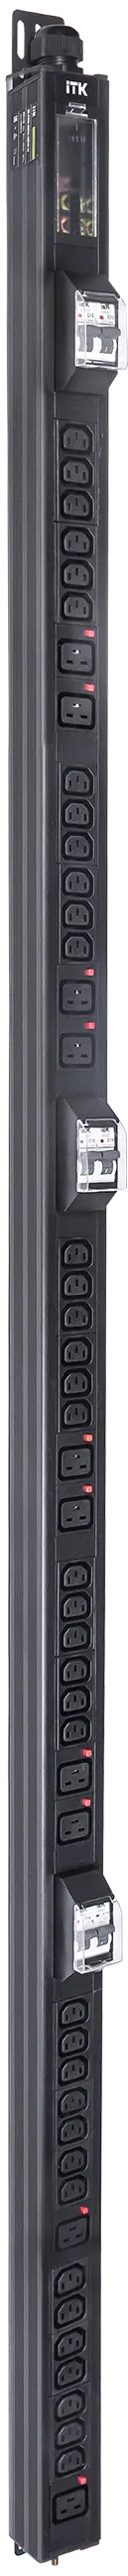 ITK BASE PDU вертикальный PV1113 45U 3 фазы 32А 38 розеток C13 + 10 розеток C19 с клеммной колодкой и кабелем 6м вилка IEC60309 (промышленная) черный